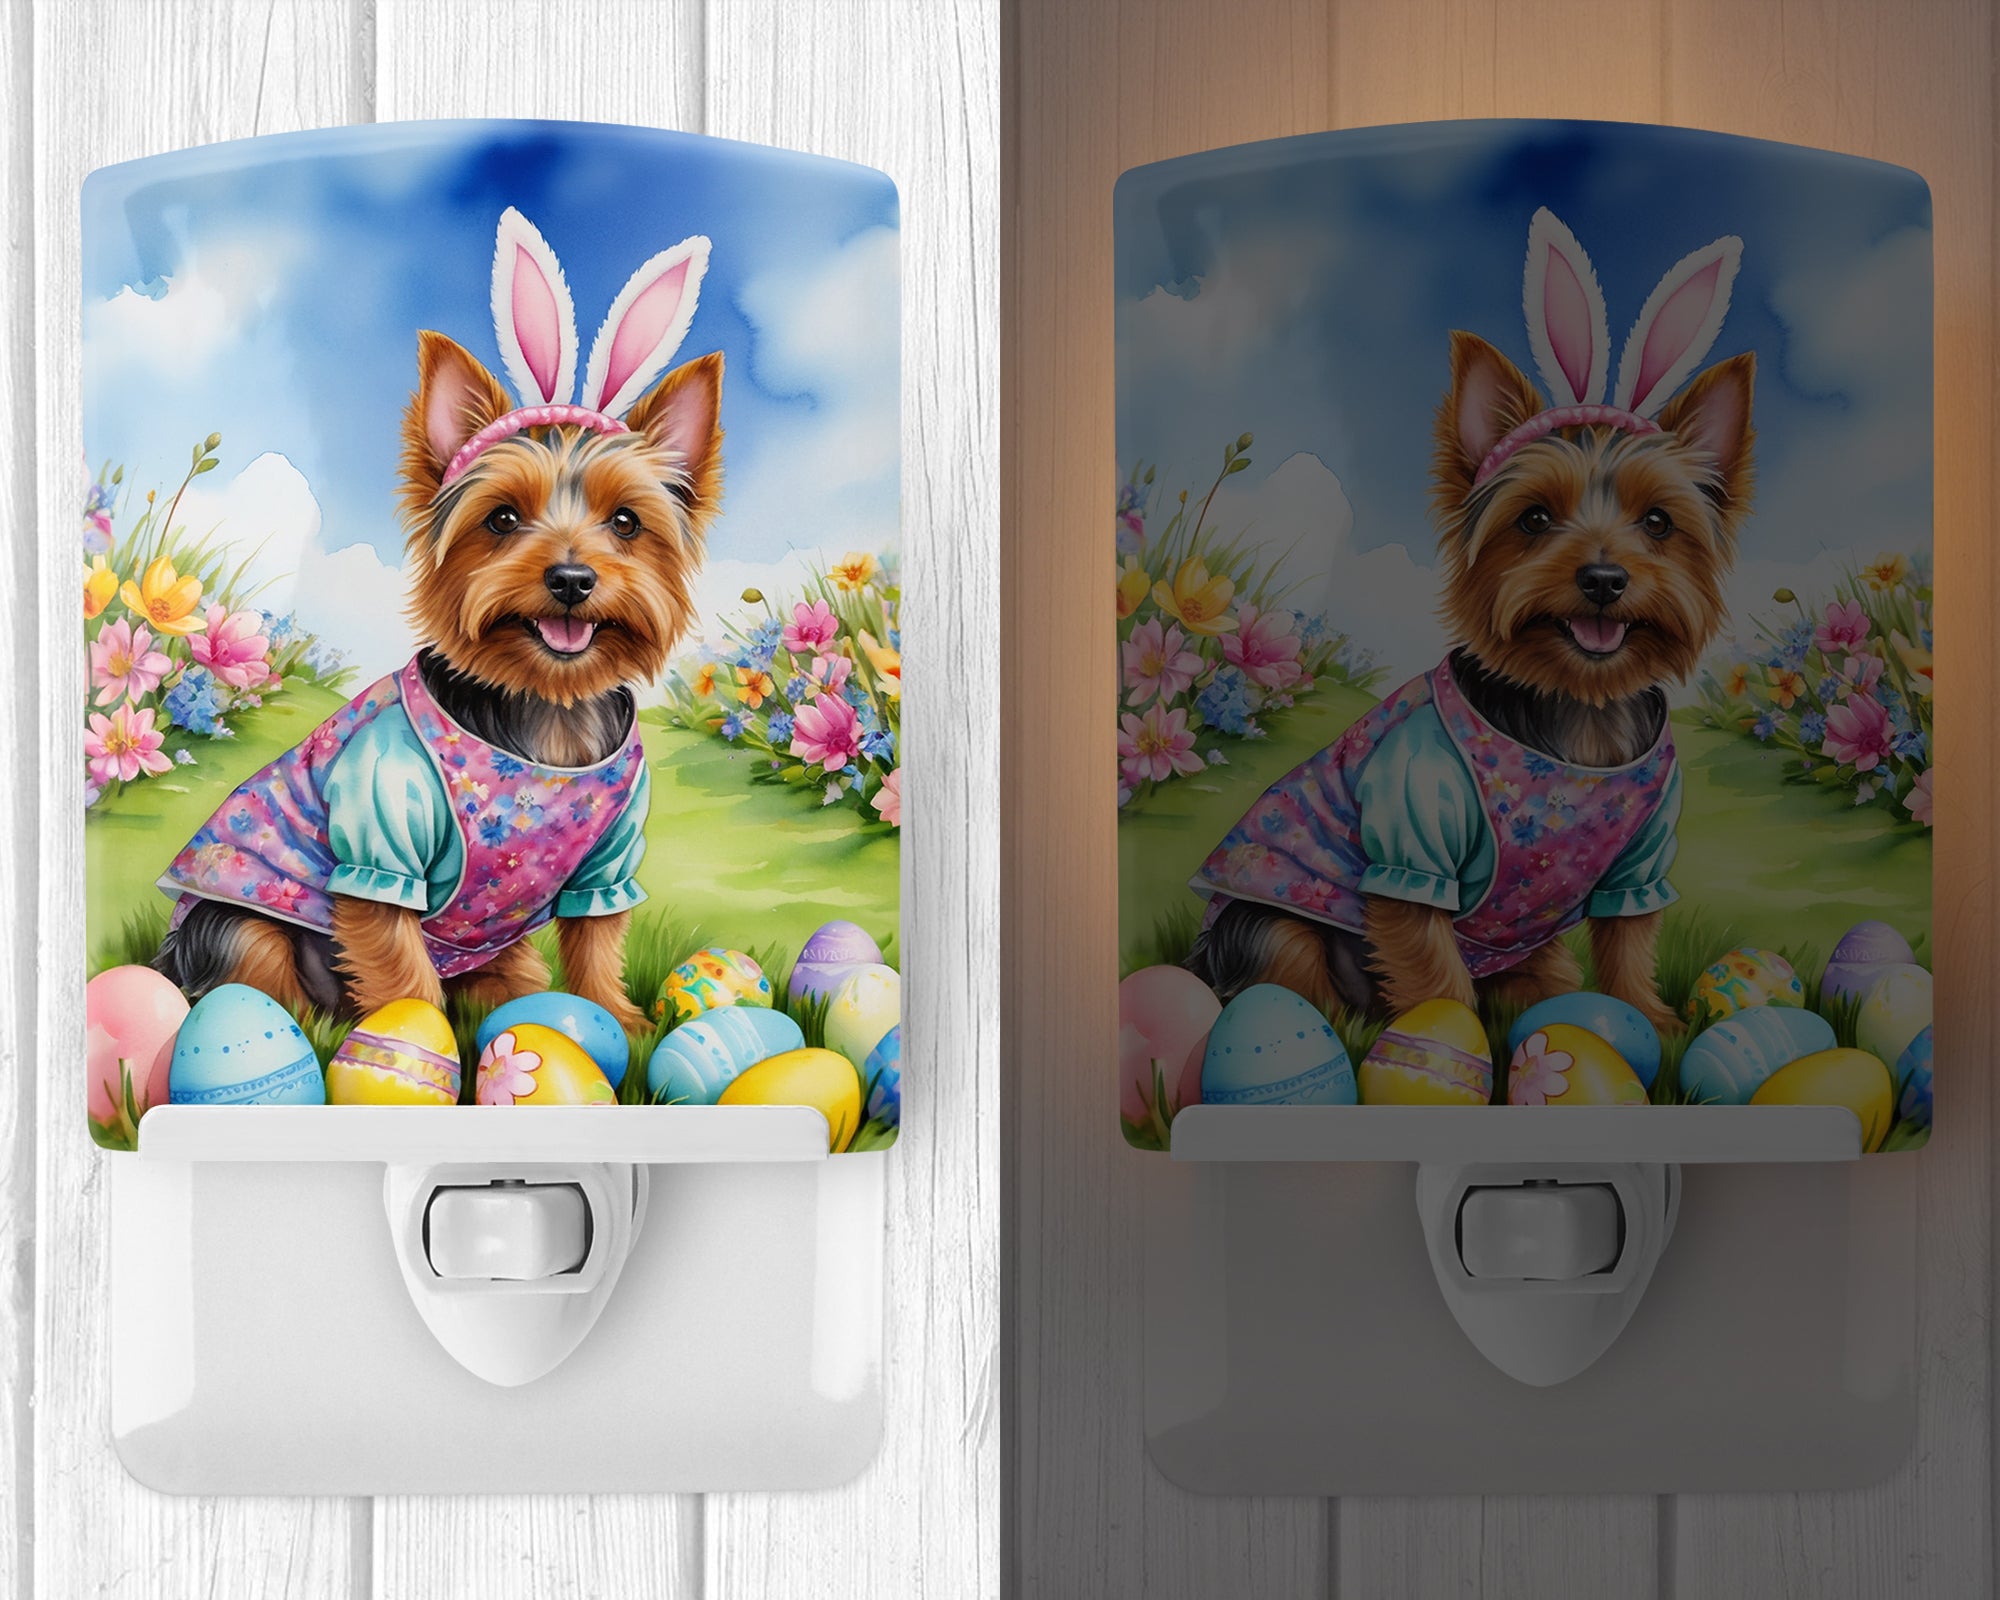 Australian Terrier Easter Egg Hunt Ceramic Night Light